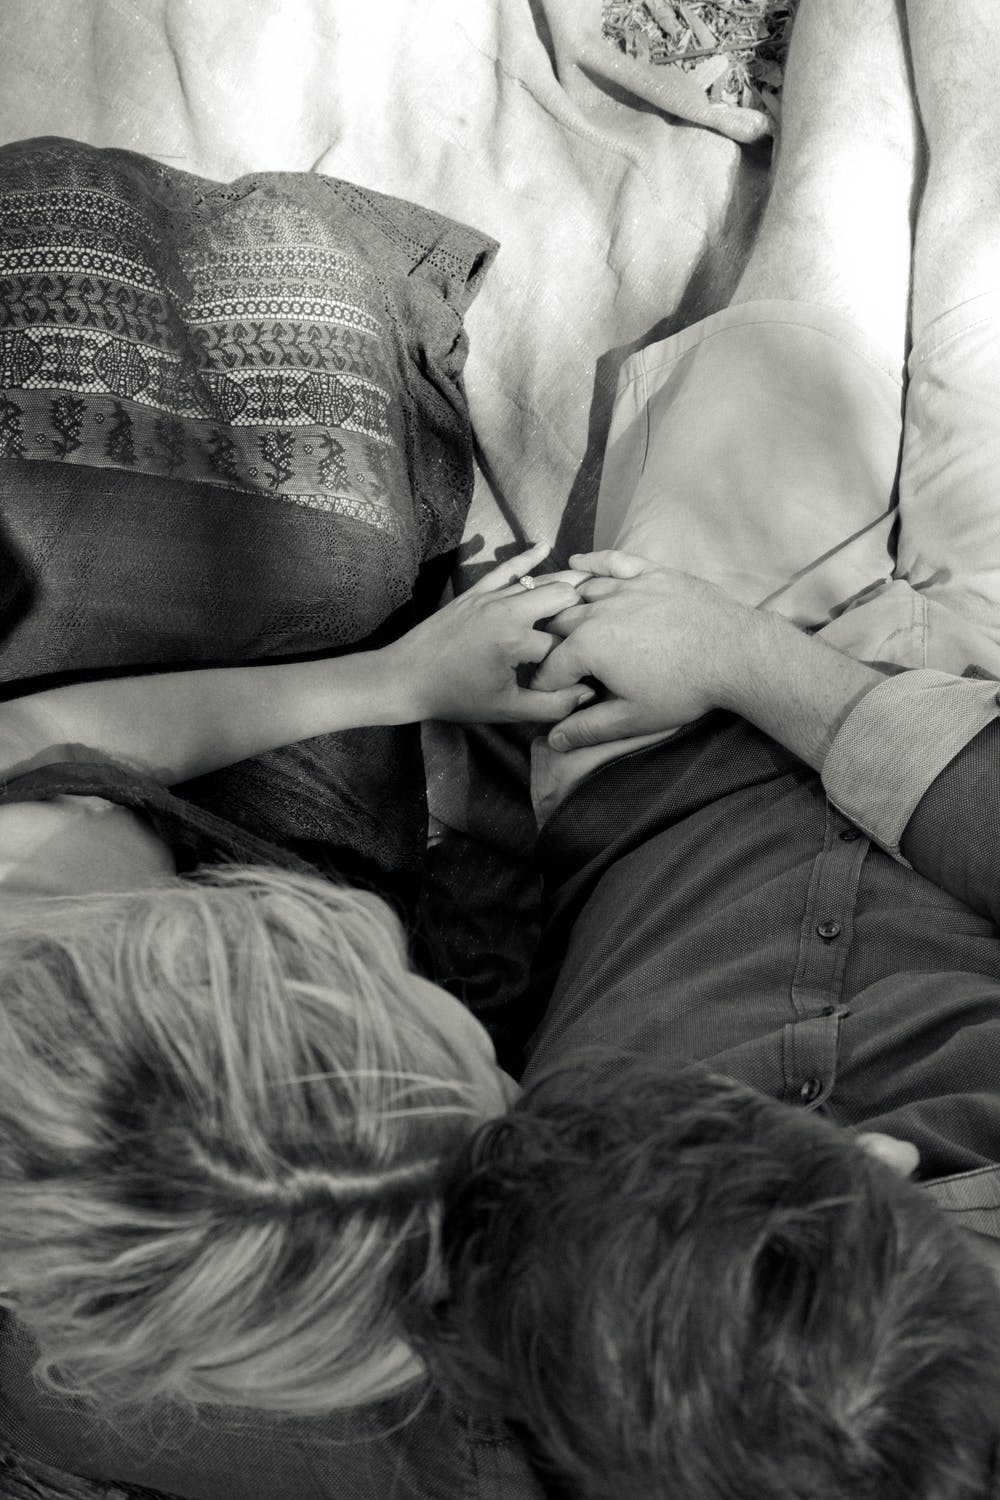 Sich wieder velrieben - Mann und Frau liegen auf dem Bett | Quelle: Pexels/Tracey Shaw